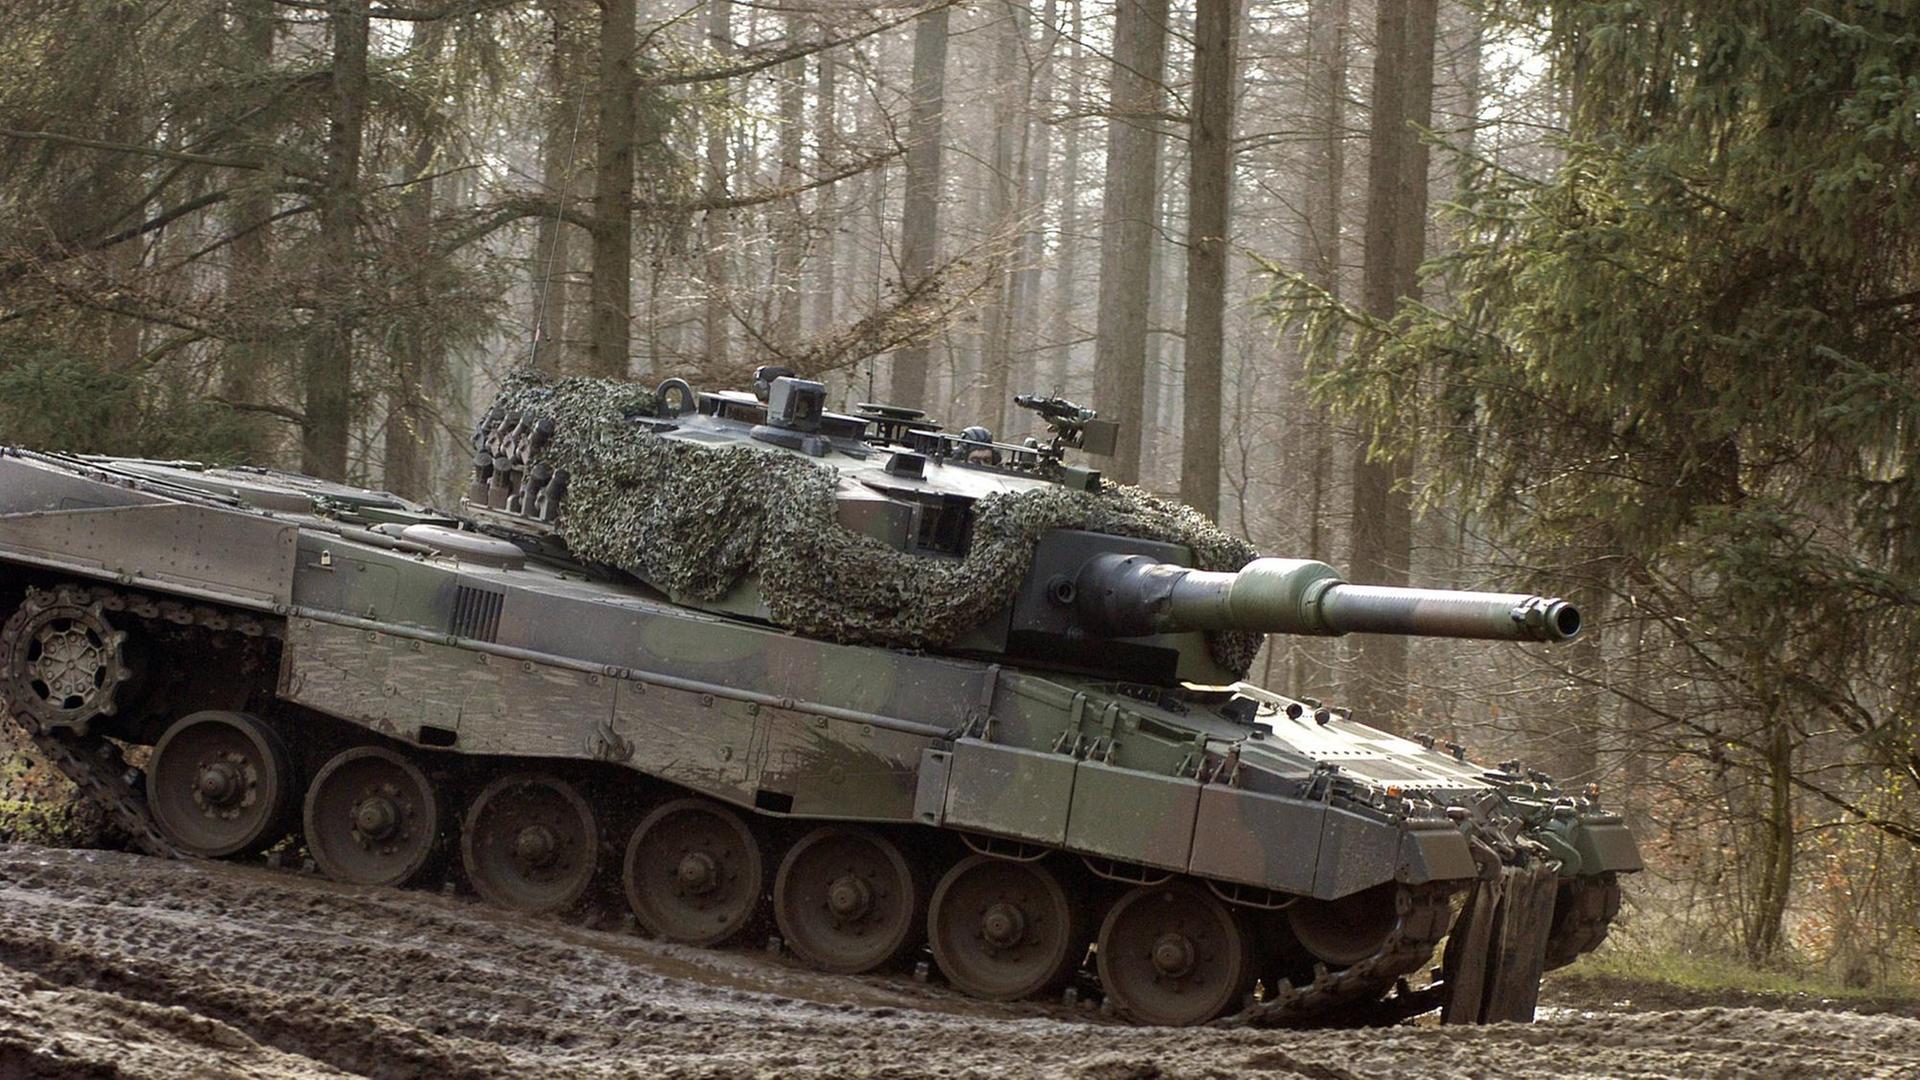 Kampfpanzer LEOPARD 2A4 während einer Militärübung in Bootstedt im Jahr 2004,bei einem Militärmanöver der Bundeswehr.